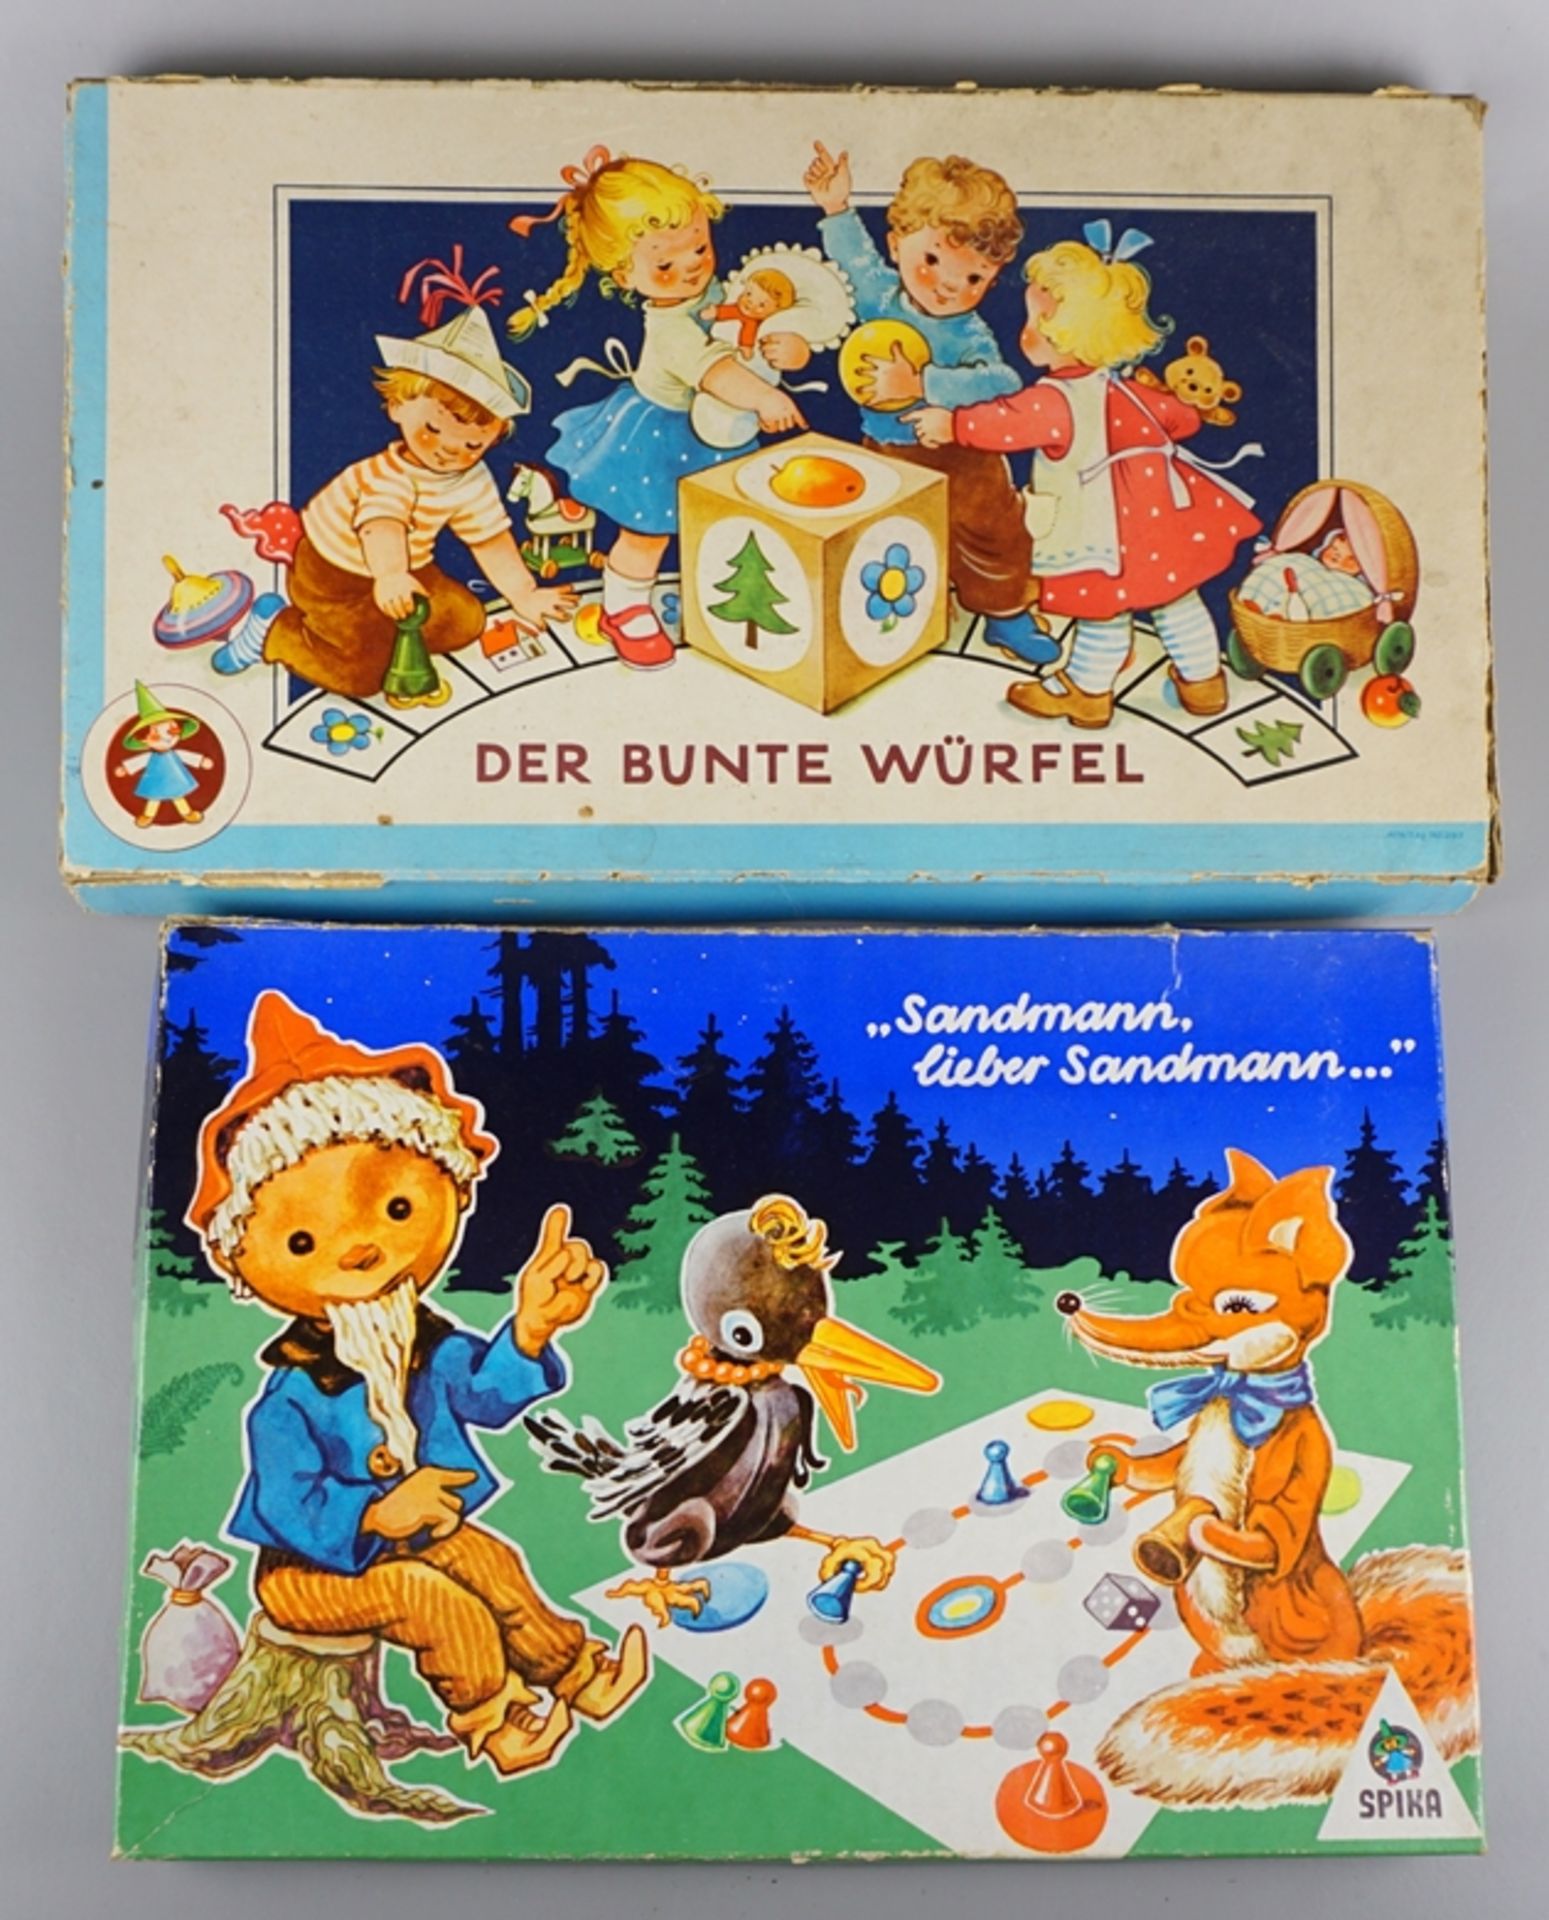 2 Spiele "Sandmann, lieber Sandmann" und "Der bunte Würfel"; SPIKA, VEB Plasticart Spielewerke, Kar